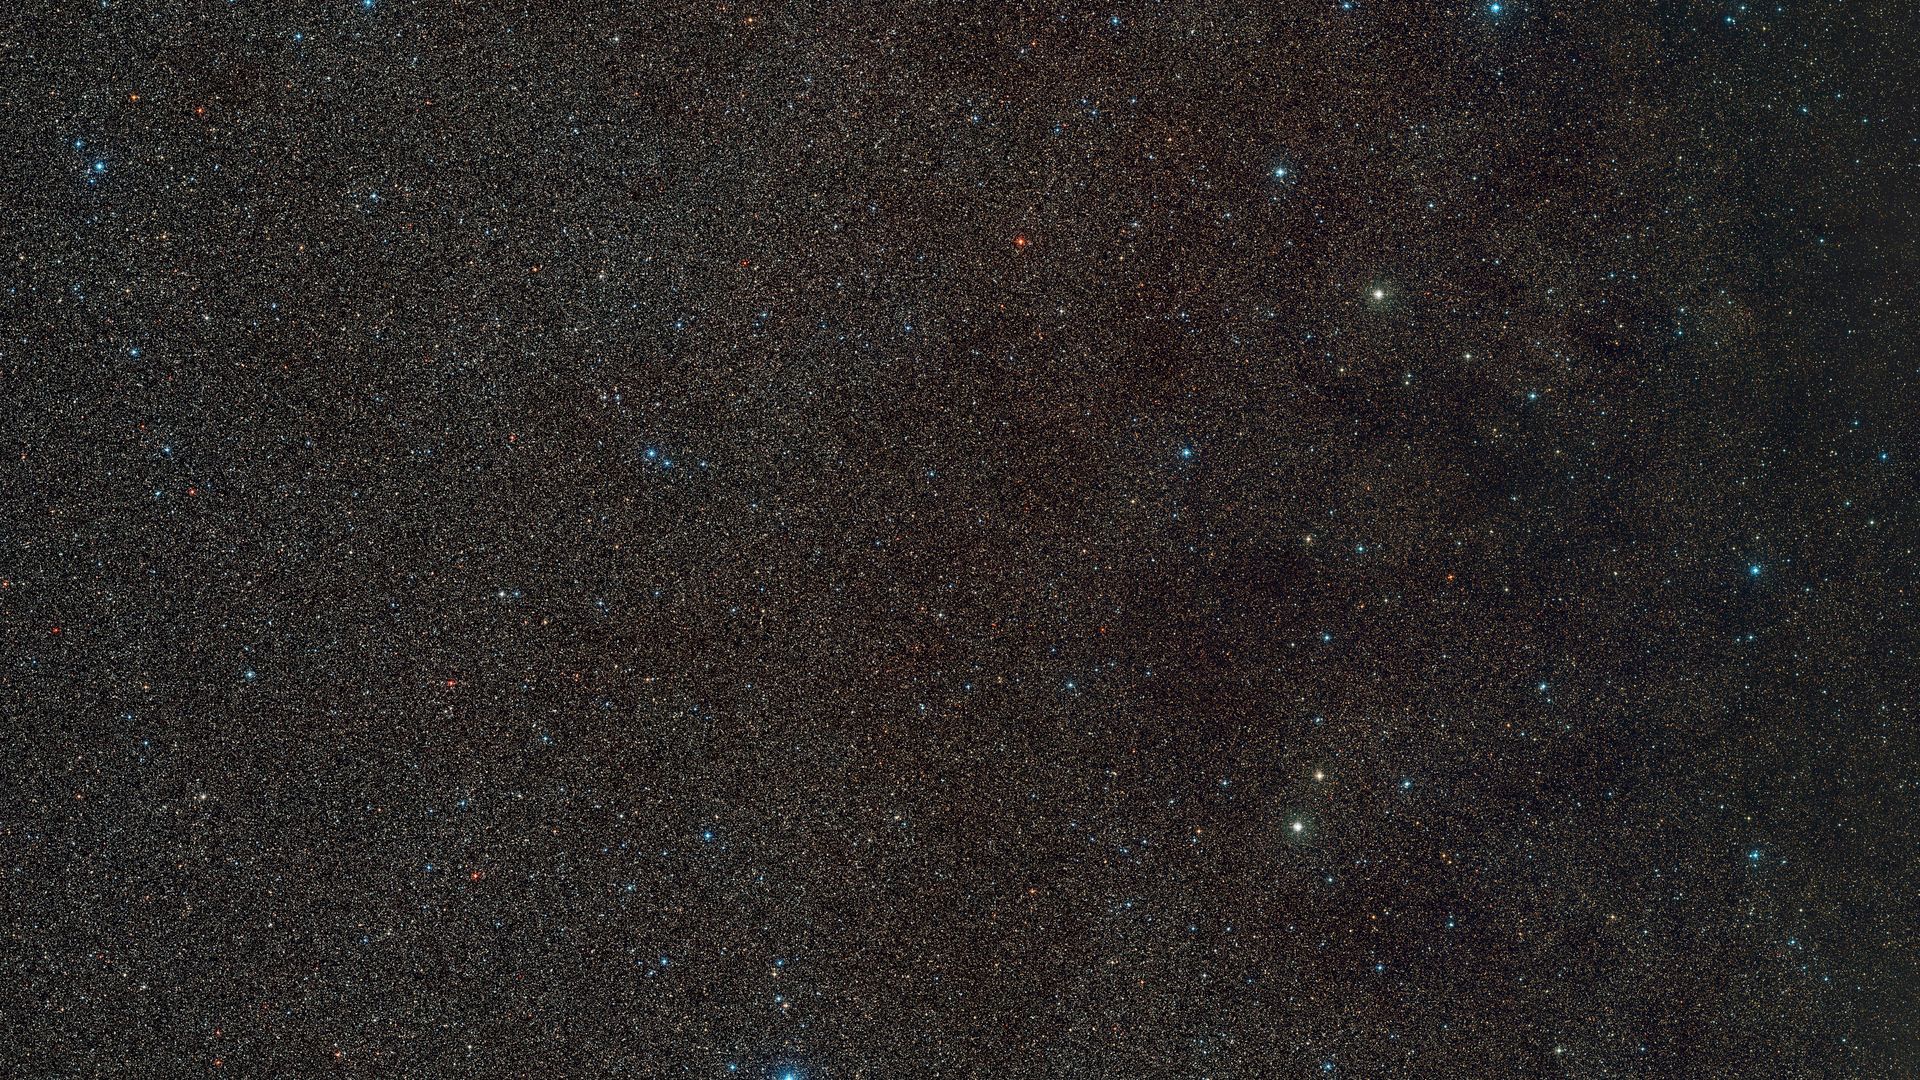 astronomie: gewaltiges schwarzes loch in der milchstraße entdeckt